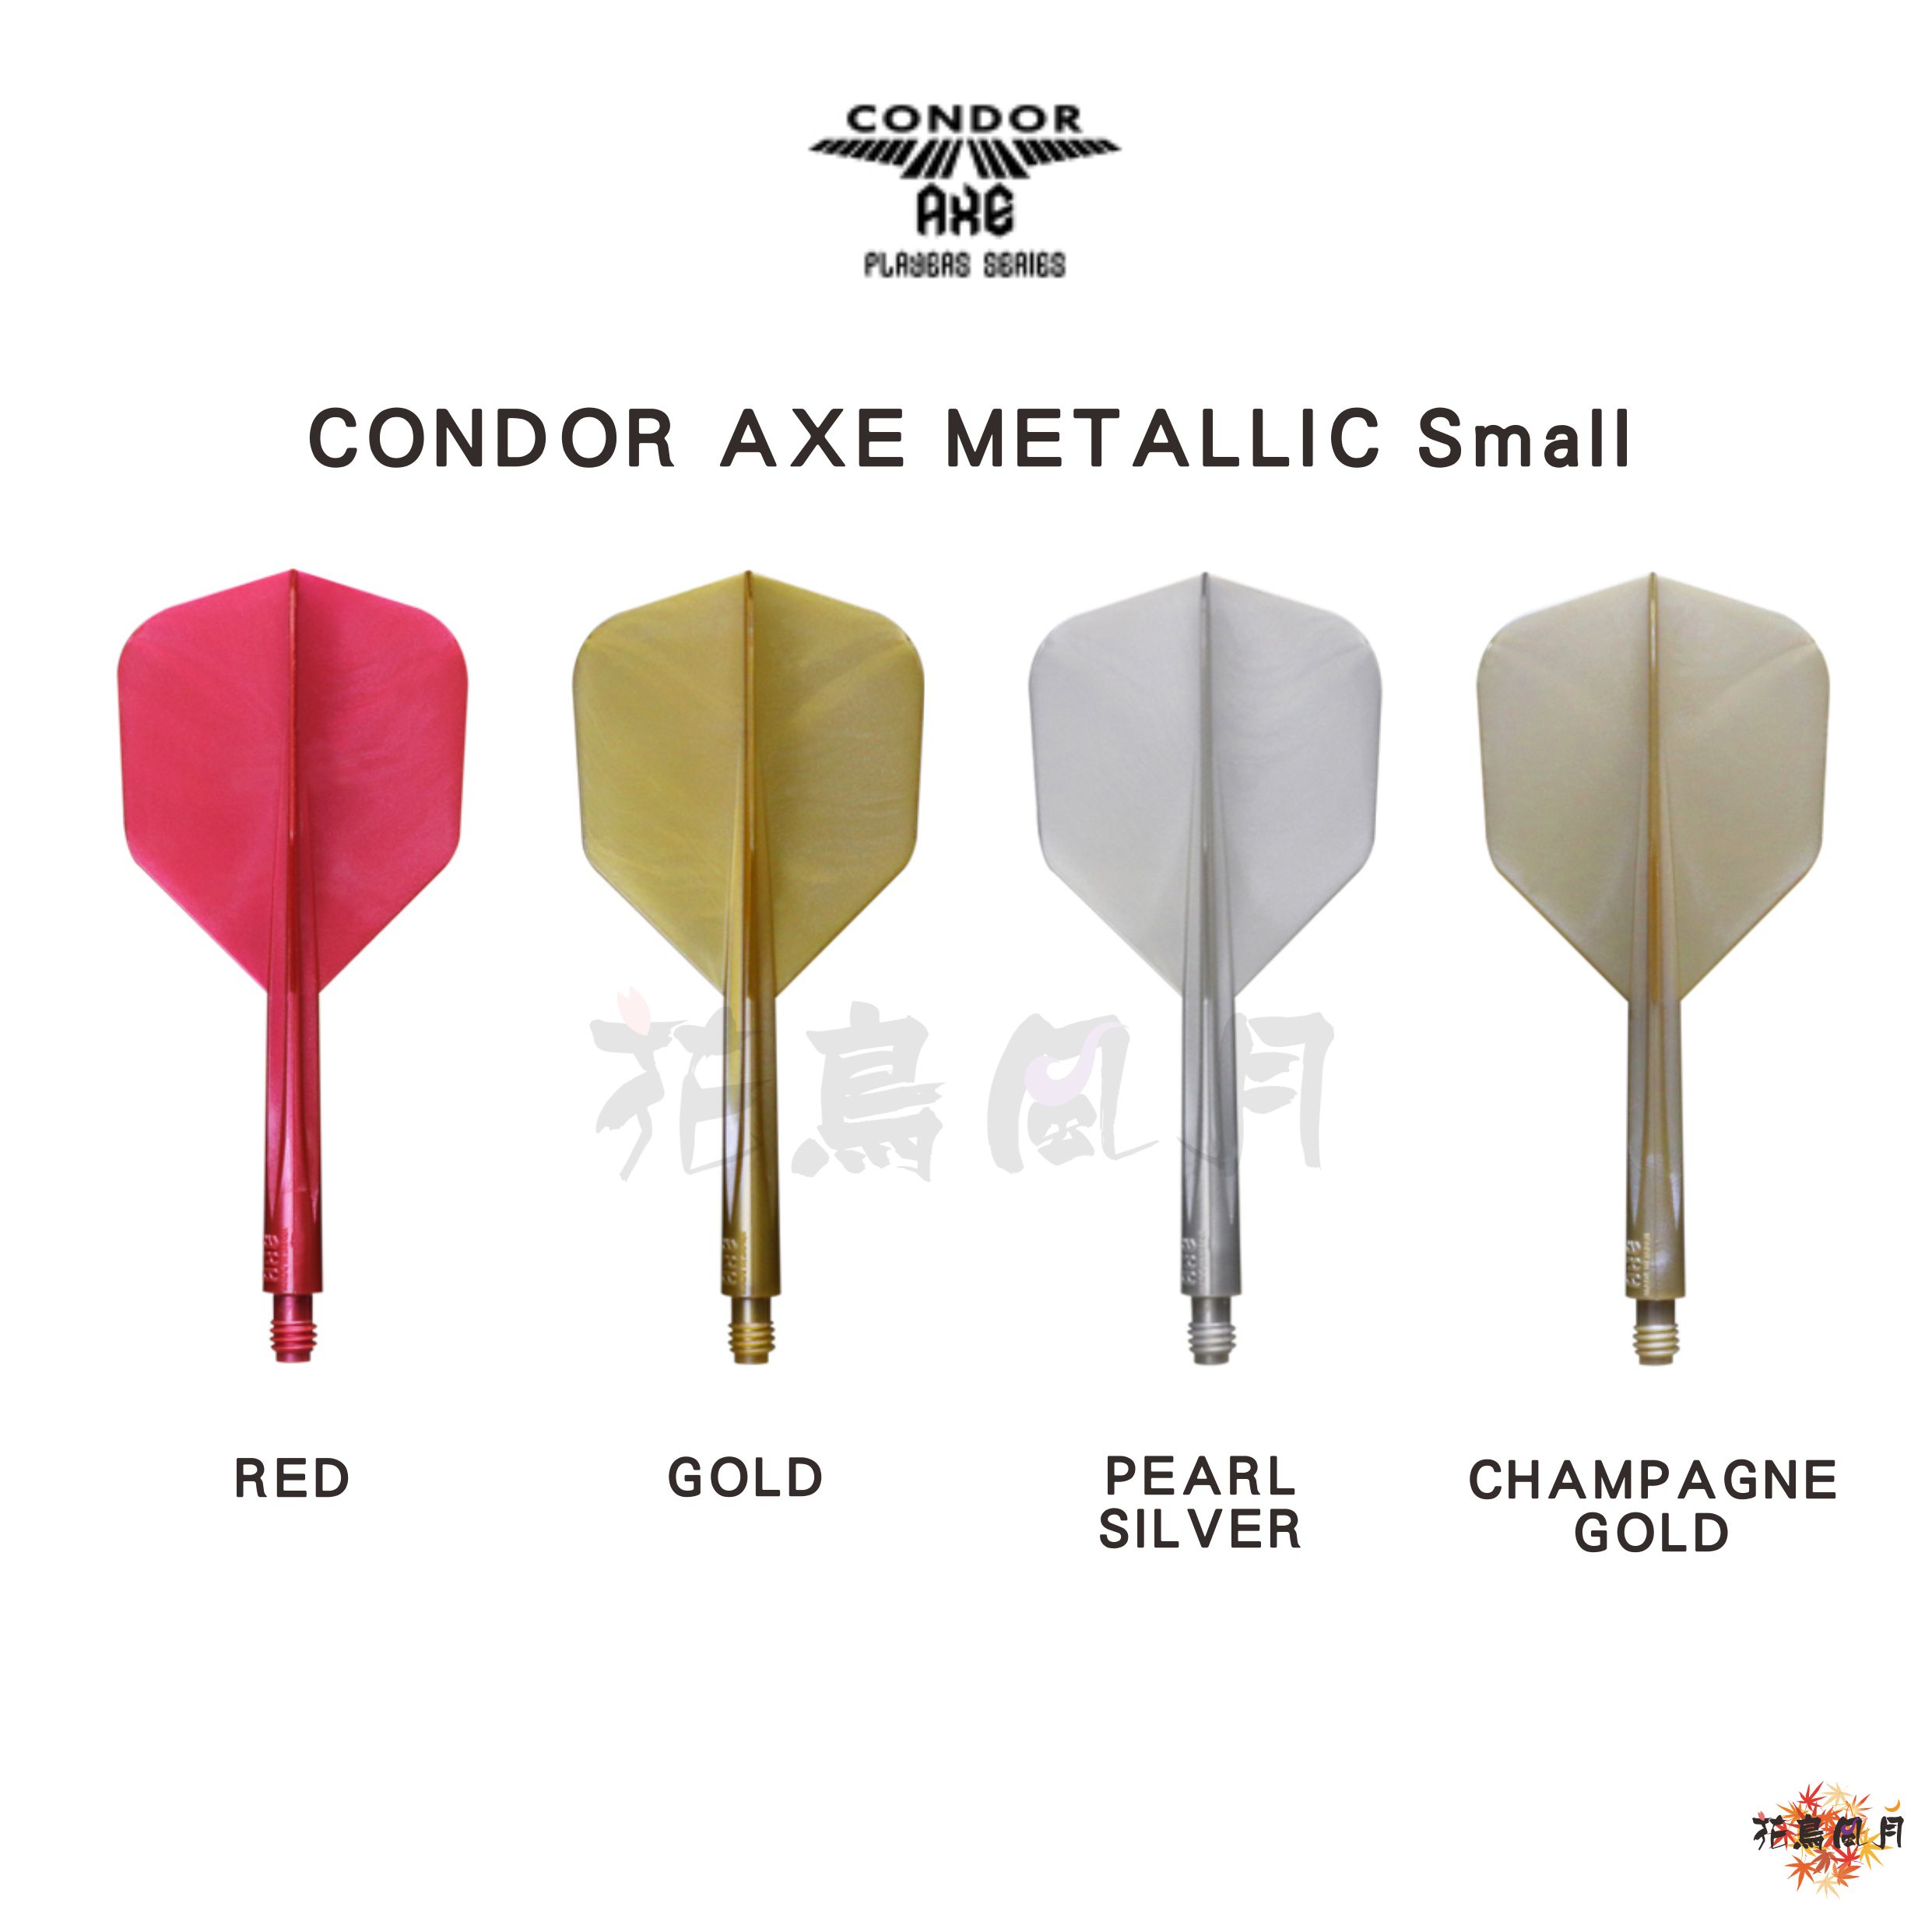 CONDOR-AXE-METALLIC-Small